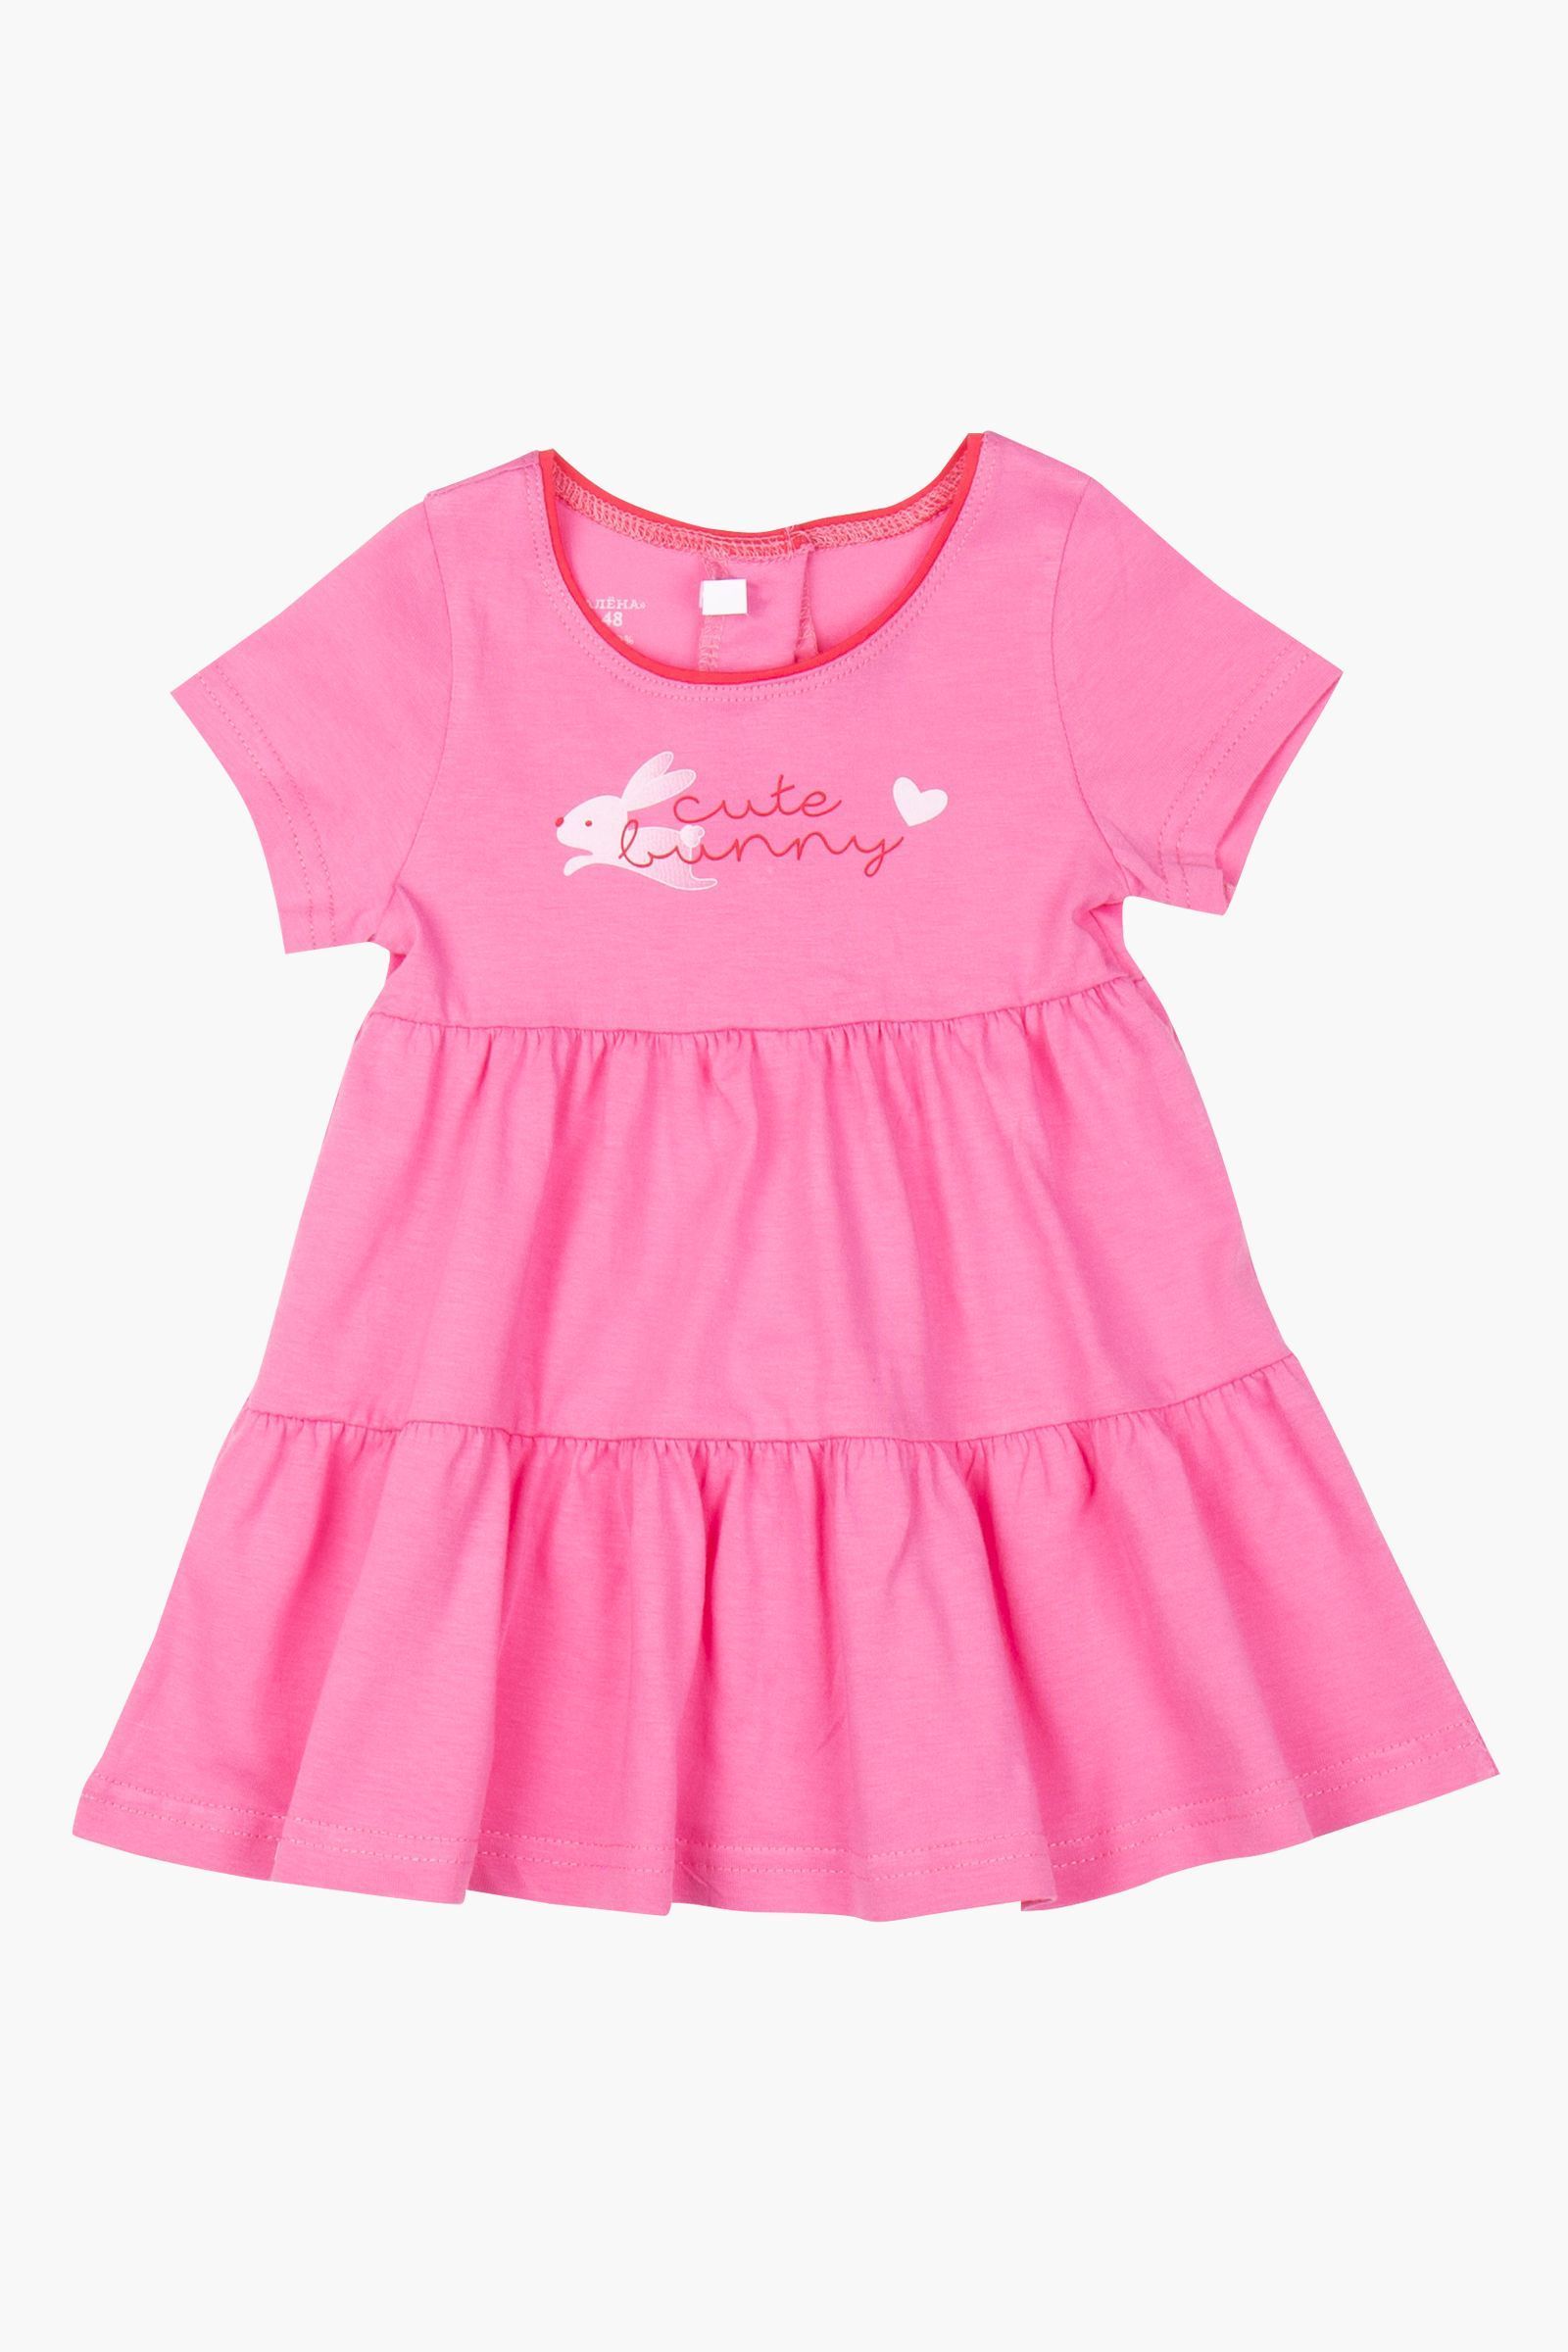 Платье-ПЛ02-4183 оптом от производителя детской одежды 'Алёна'